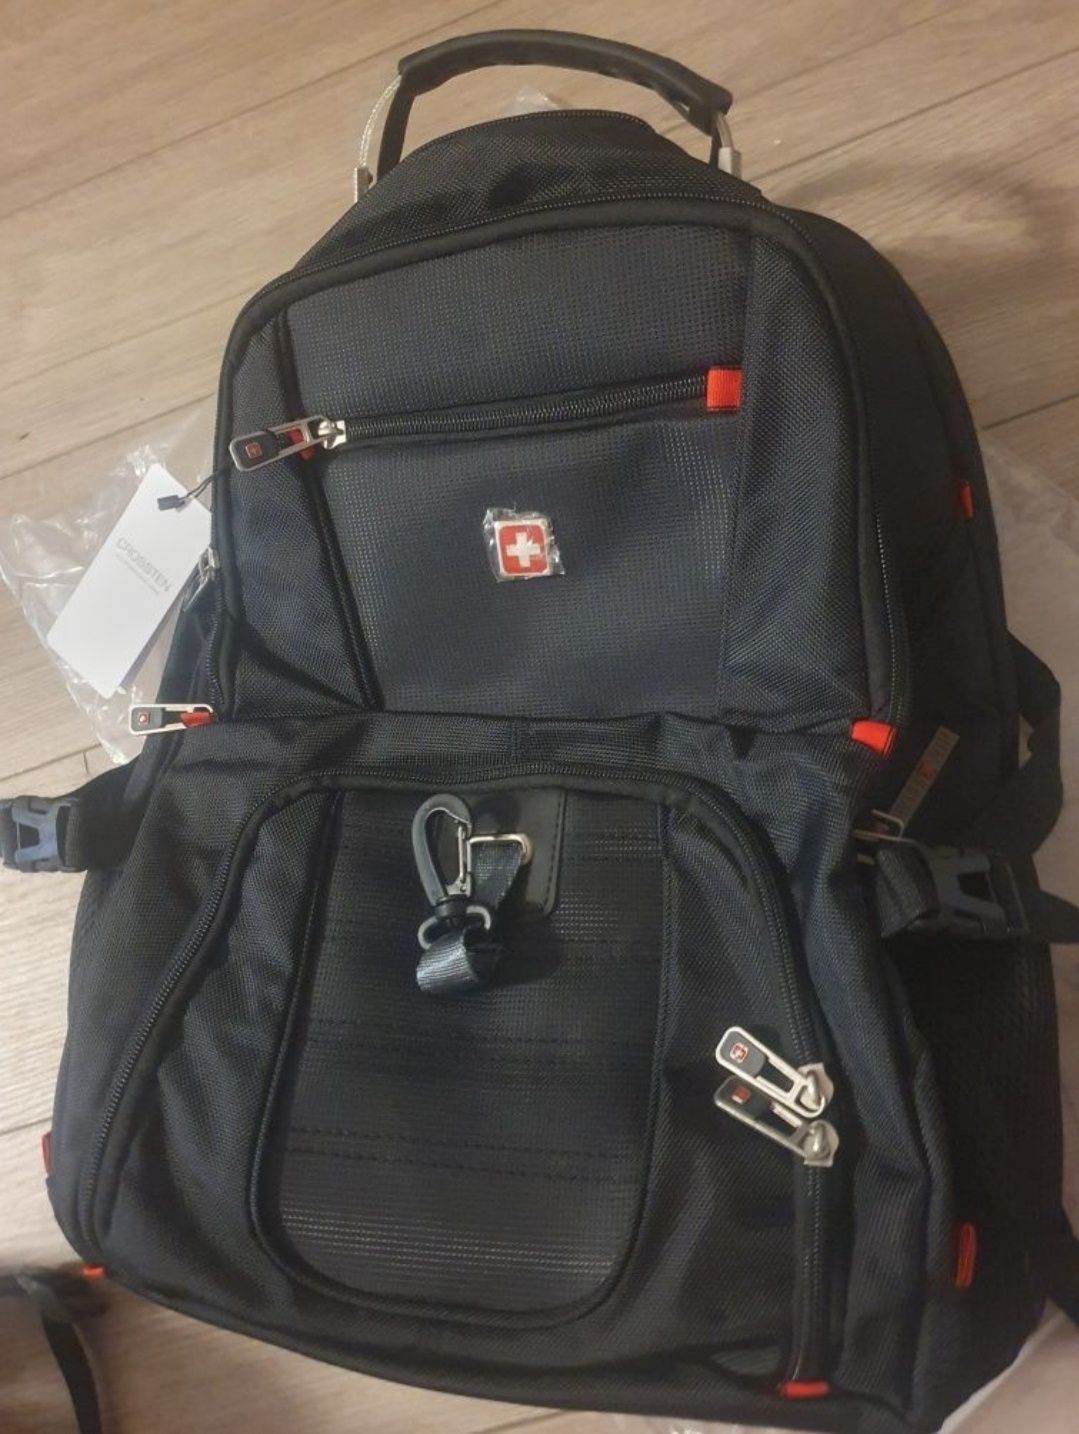 Nowy plecak SWISS 34X23x50 cm

Wytrzymały 17 calowy plecak na lap